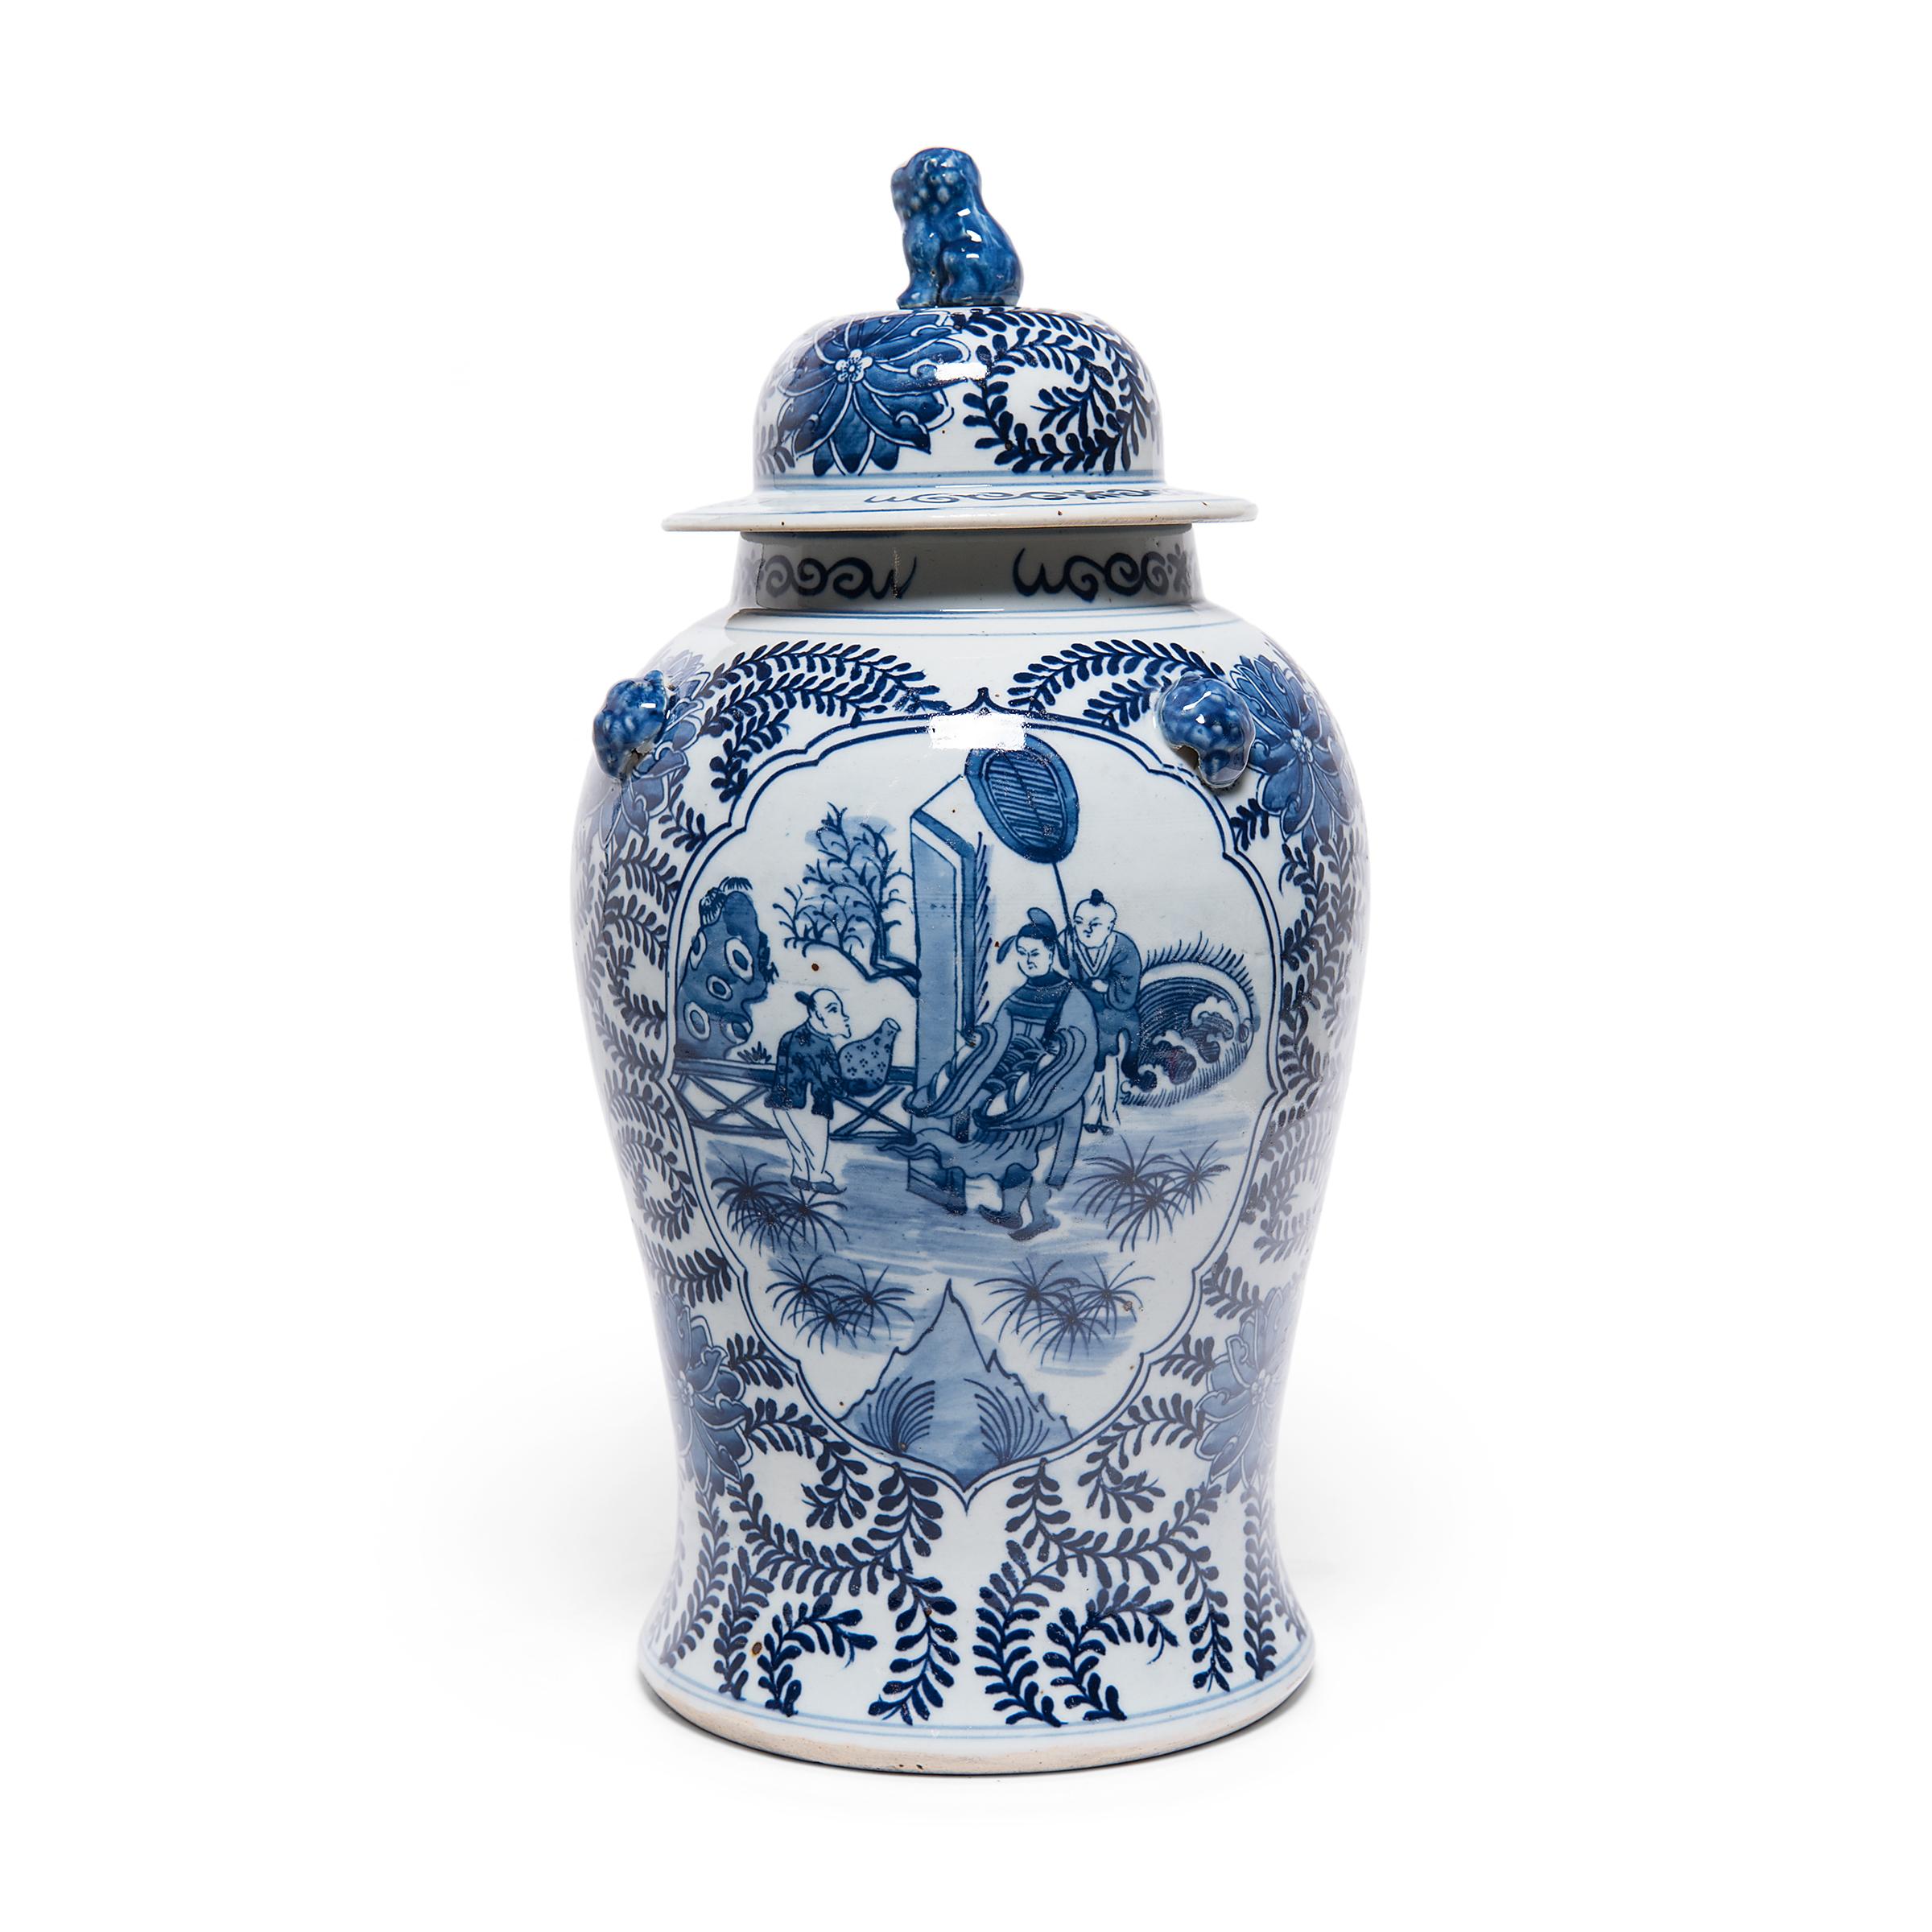 Questo vaso contemporaneo con coperchio a balaustro continua la tradizione secolare delle porcellane cinesi bianche e blu. Dipinto con pigmenti di cobalto per una finitura blu brillante, il vaso è densamente decorato con volute di vite e fiori di